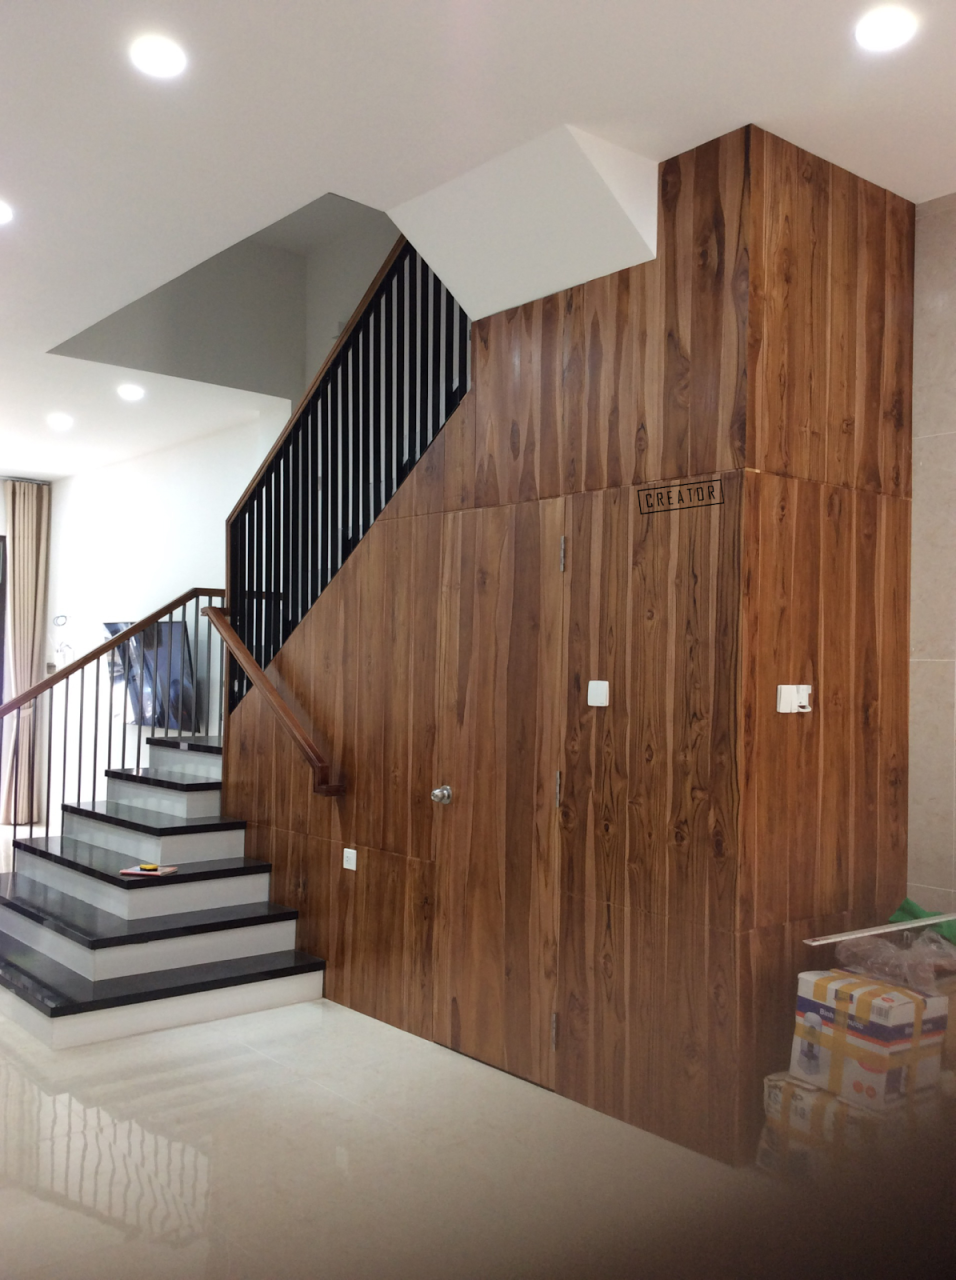 Mẫu ốp tủ gỗ dưới cầu thang tận dụng tối đa không gian